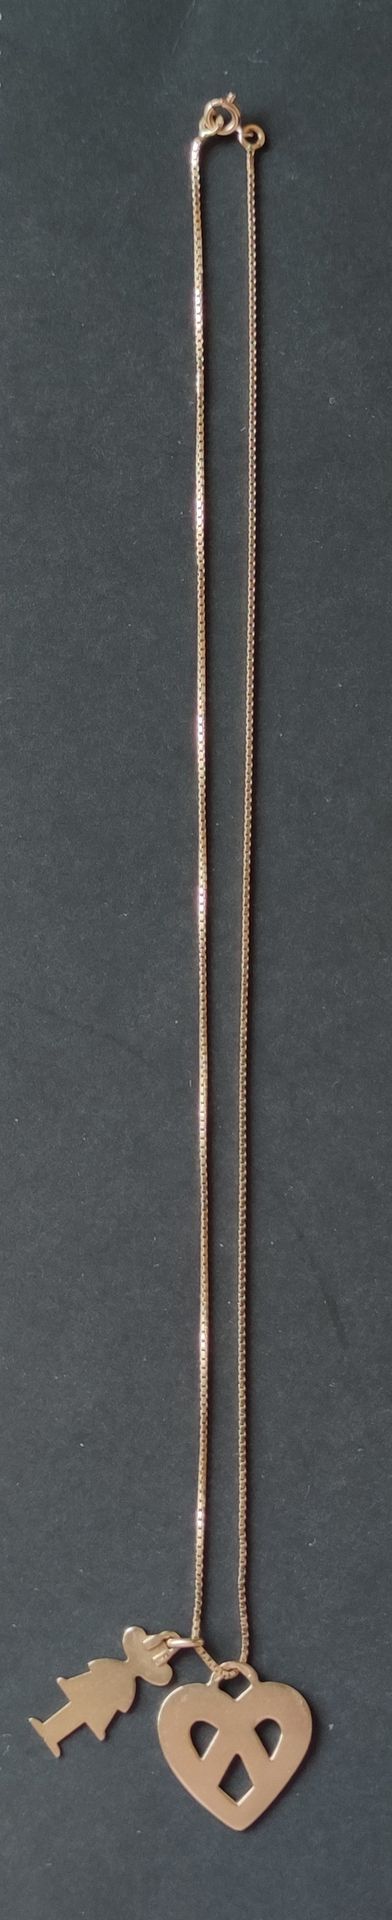 Null 黄金750°/00 "心形和轮廓 "链和两只手镯

重量：8.6克